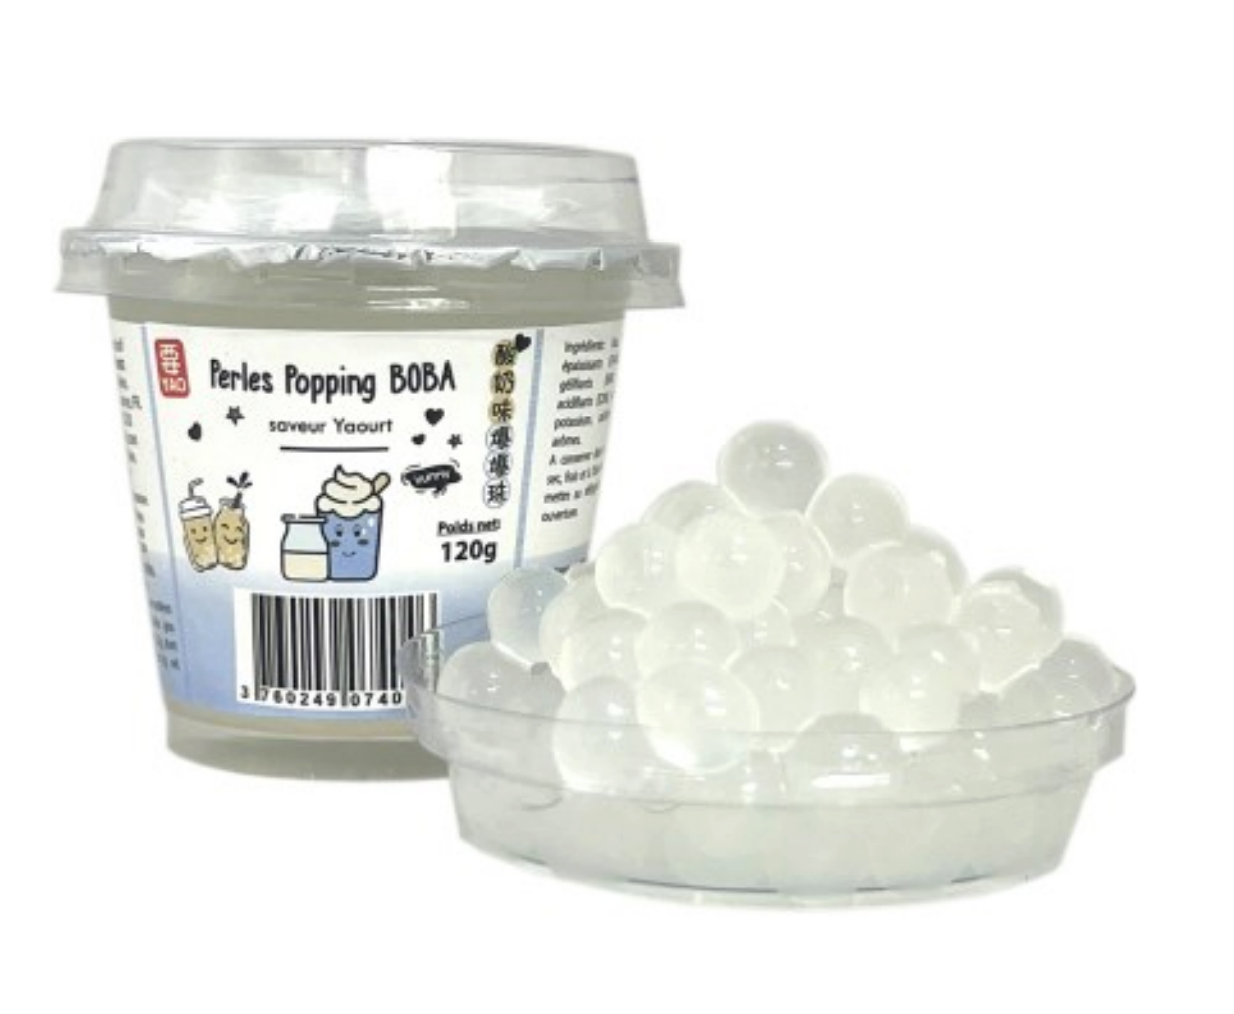 Perles Popping Boba ORIGINAL Bubble Tea - 120g